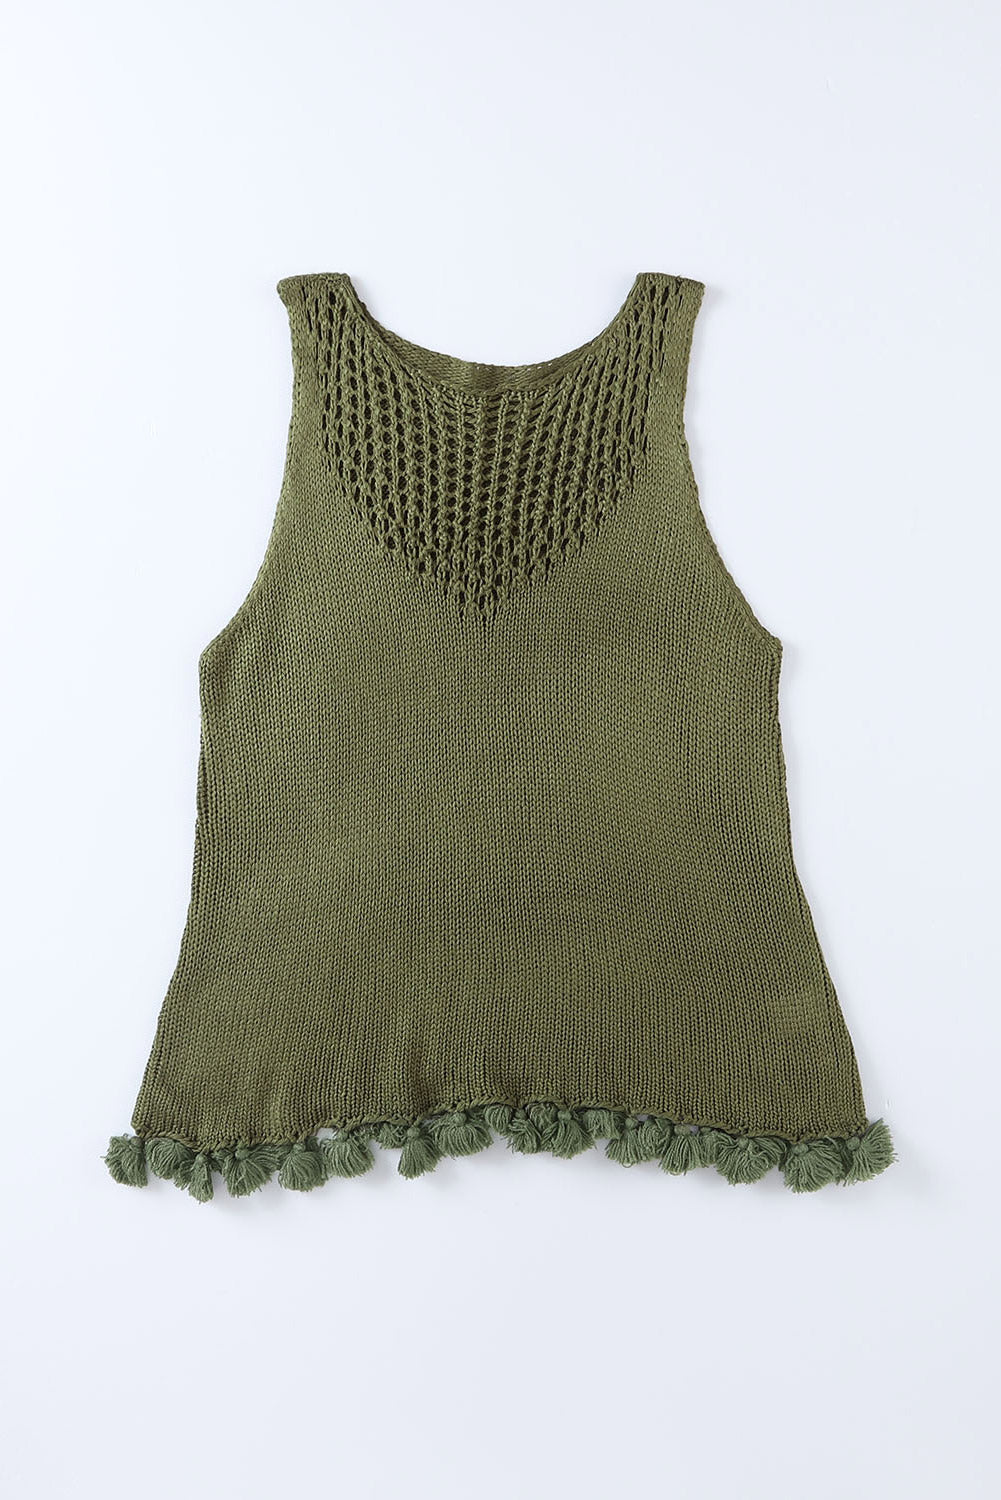 Débardeur vert en tricot ajouré au crochet à pompons